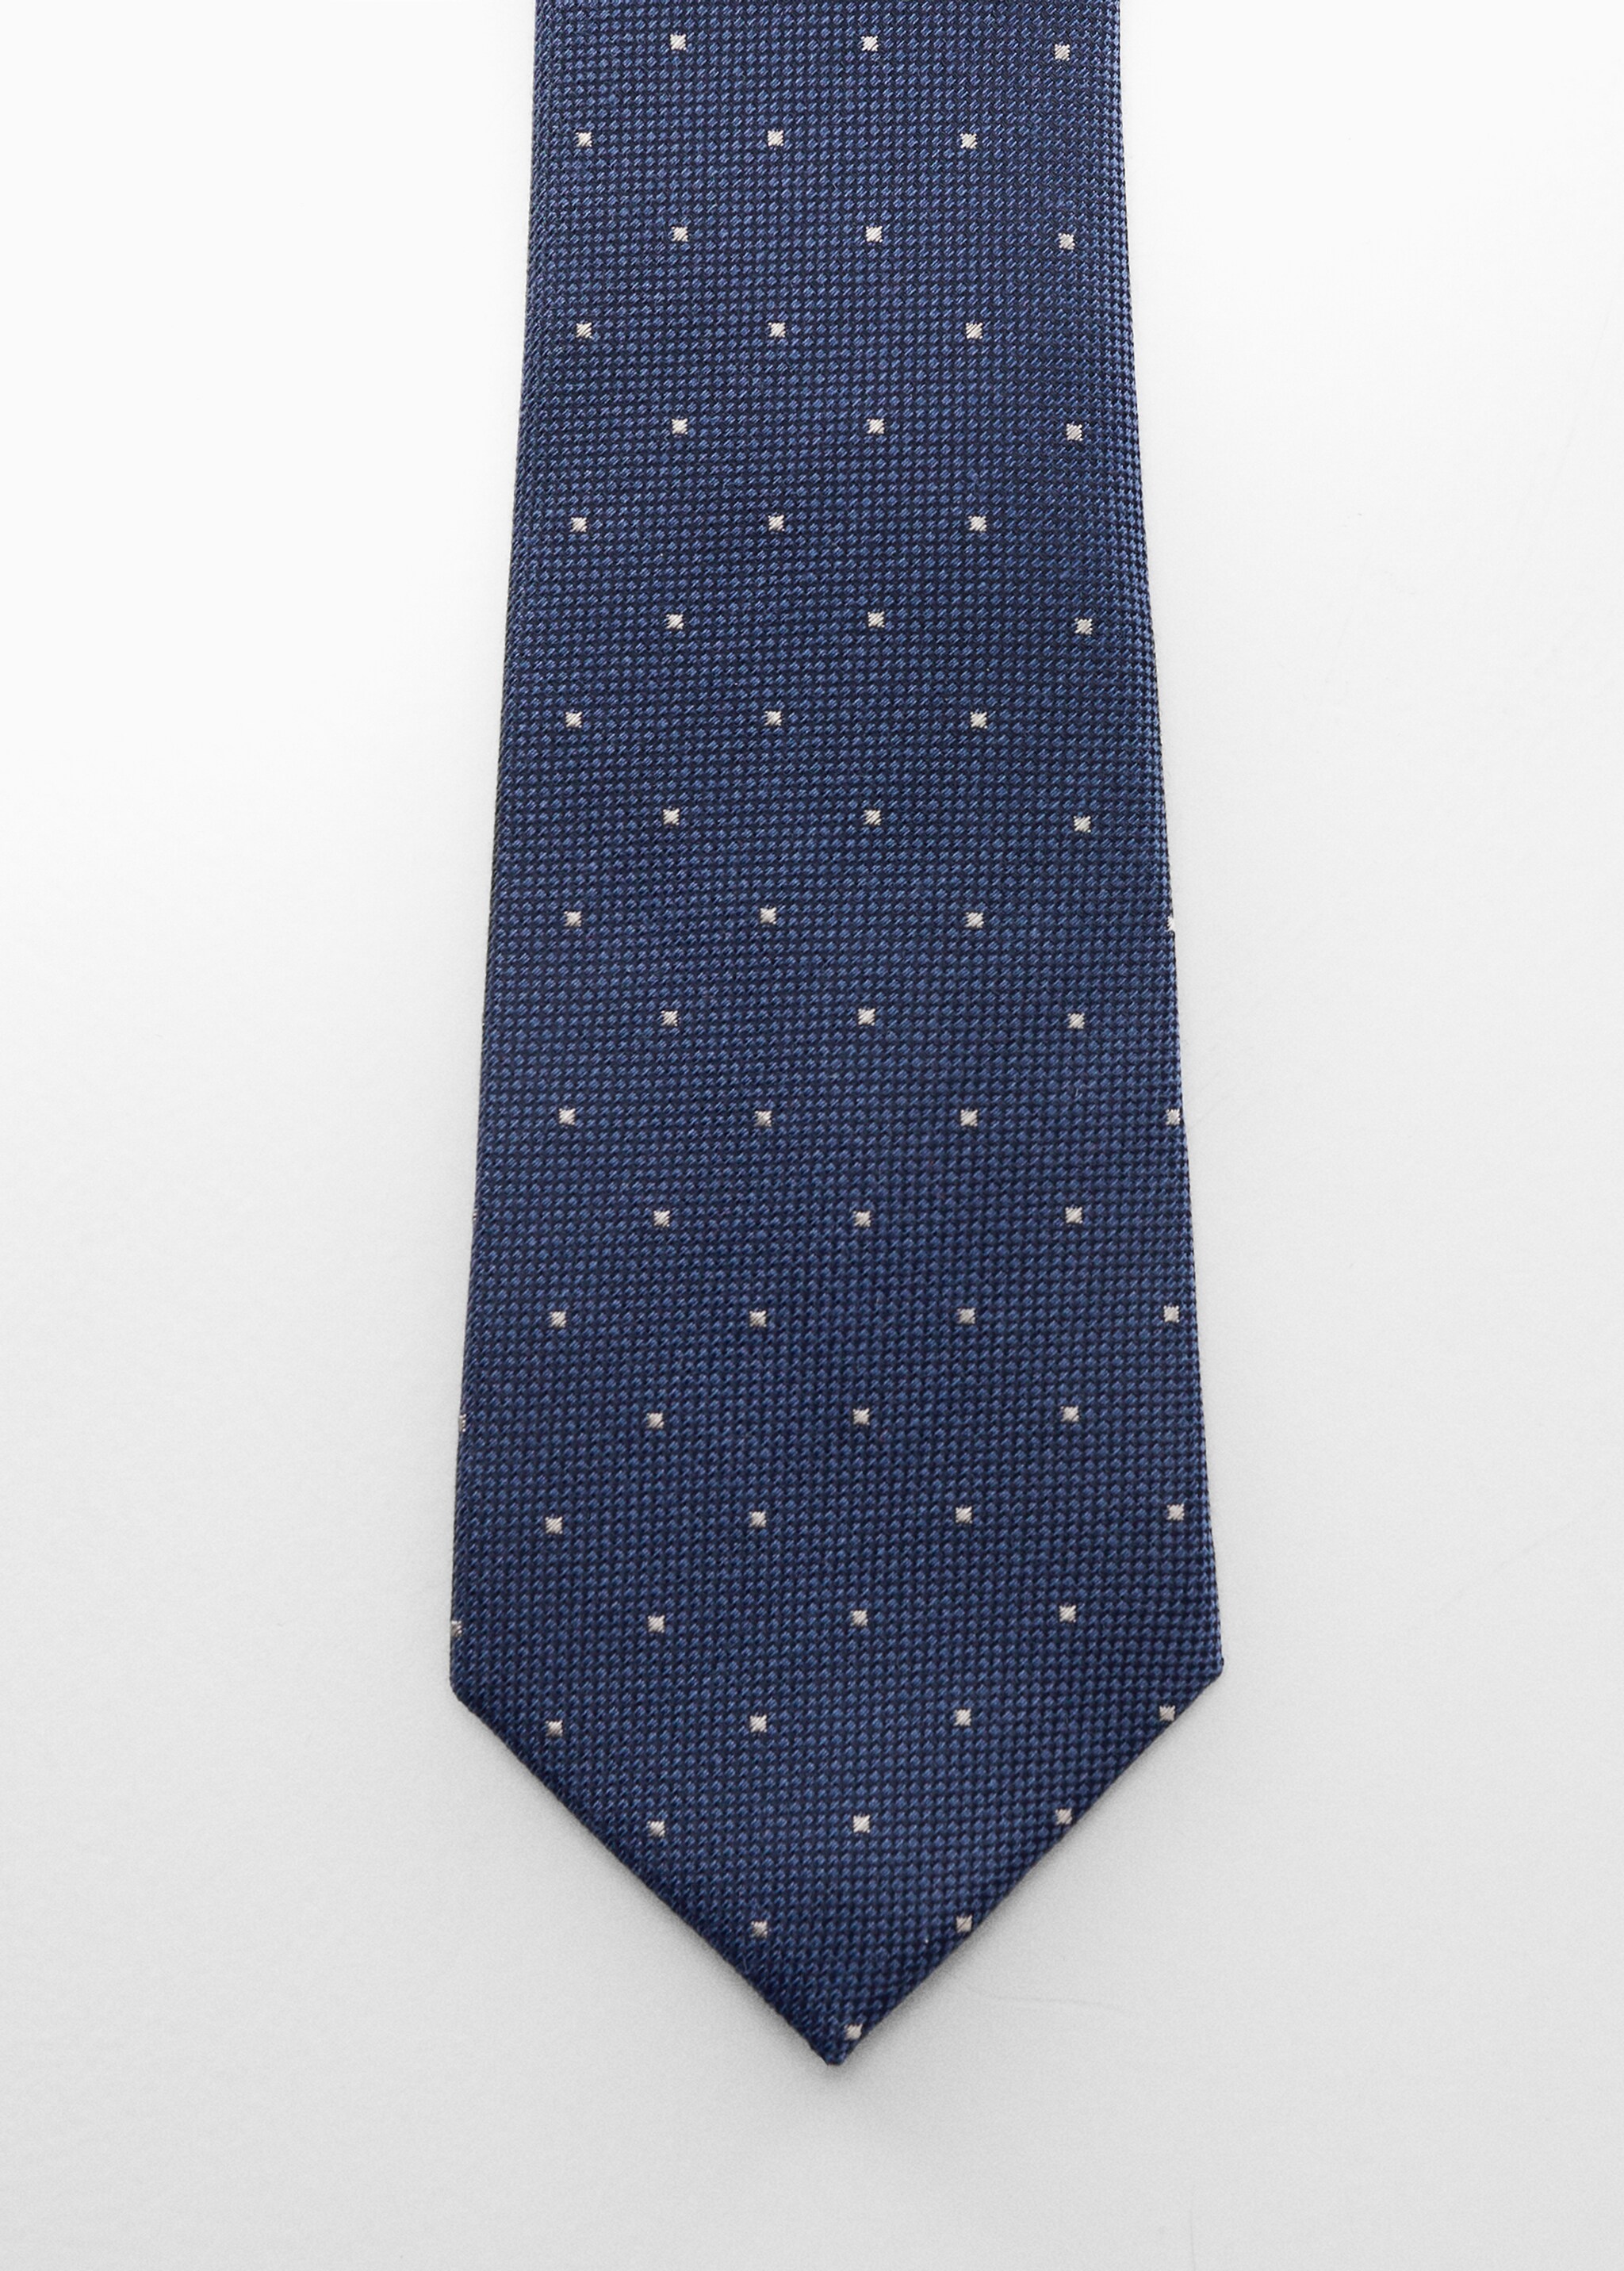 Mikro puantiyeli biçimli kravat - Ürün detayı 1